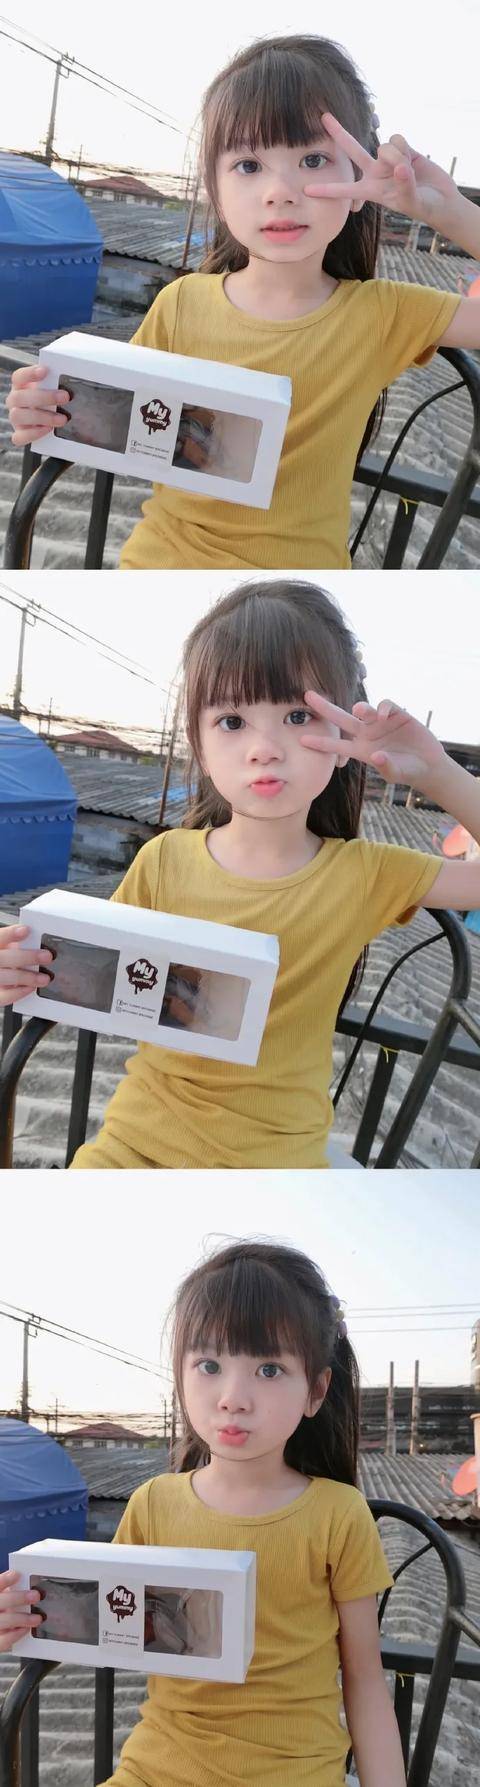 原创泰国6岁女孩爆红,这妹妹是天使下凡吧